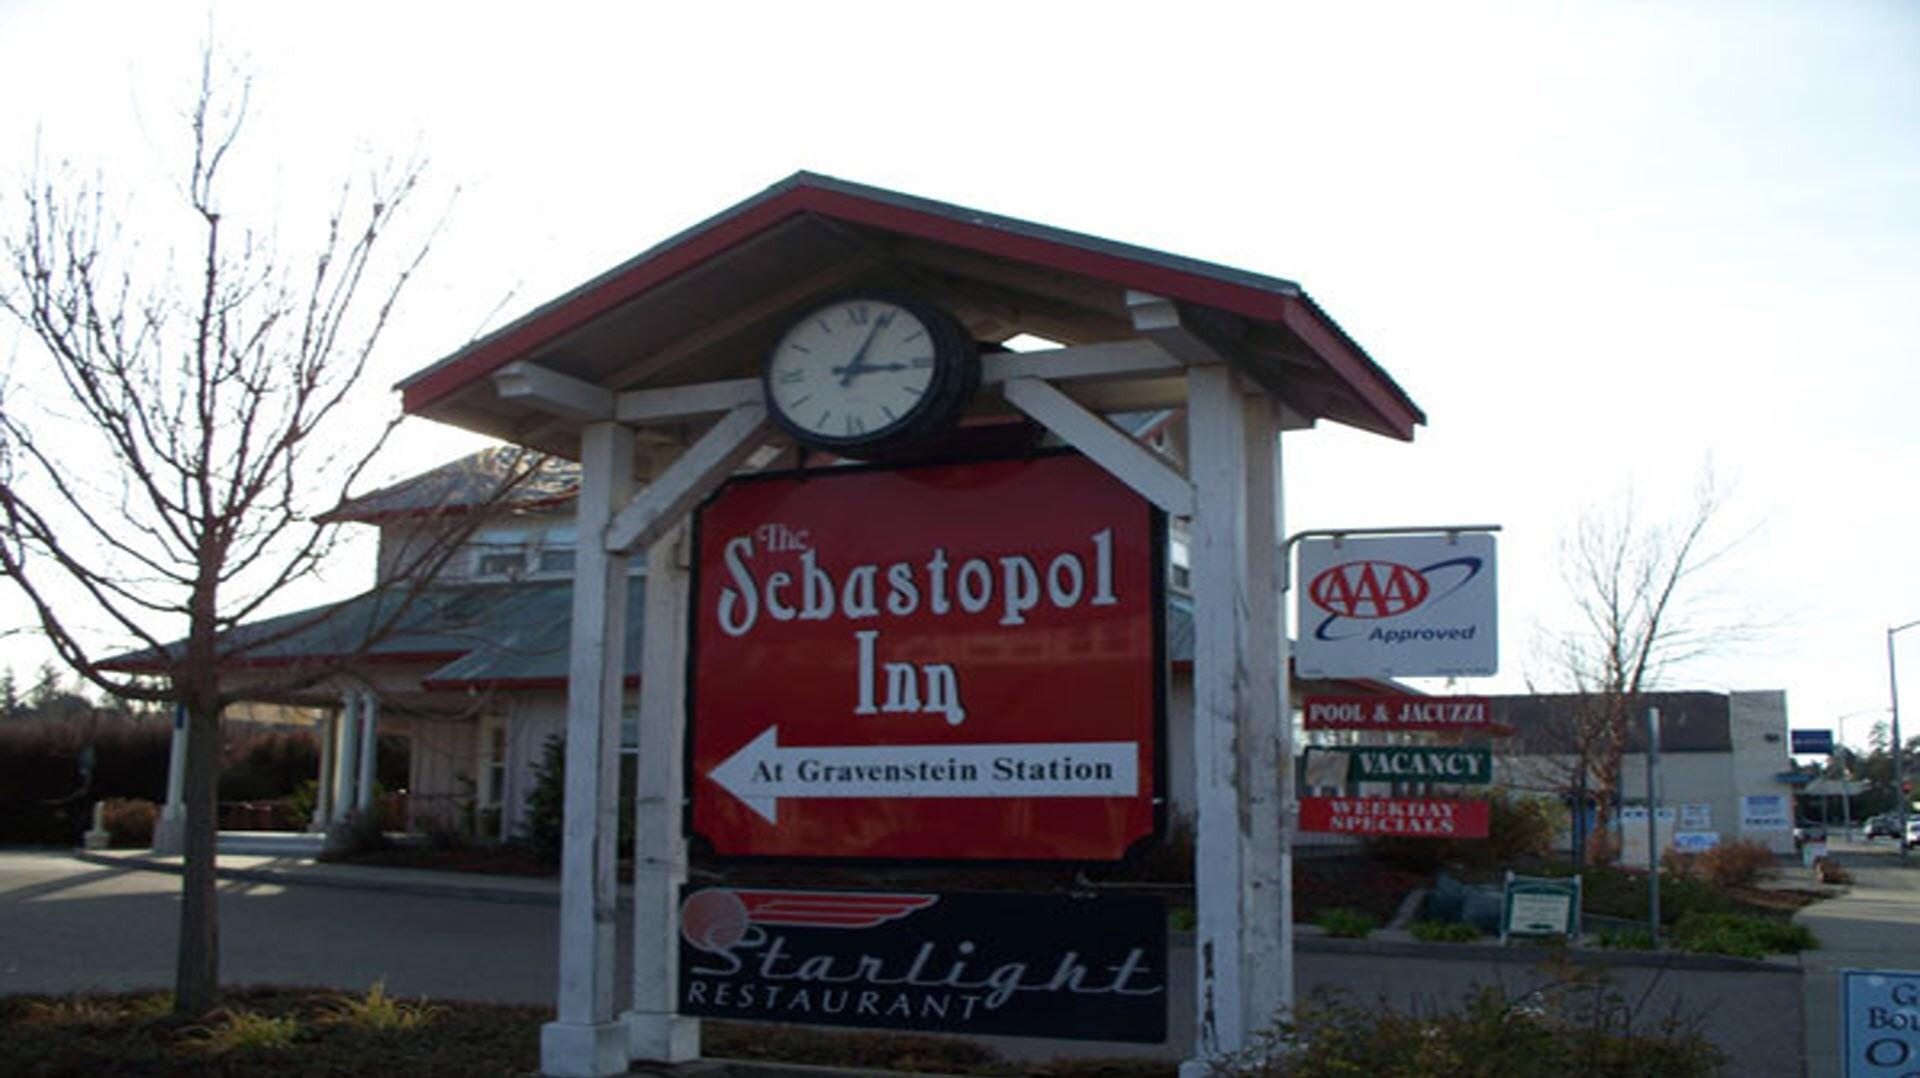 The Sebastopol Inn in Sebastopol, CA